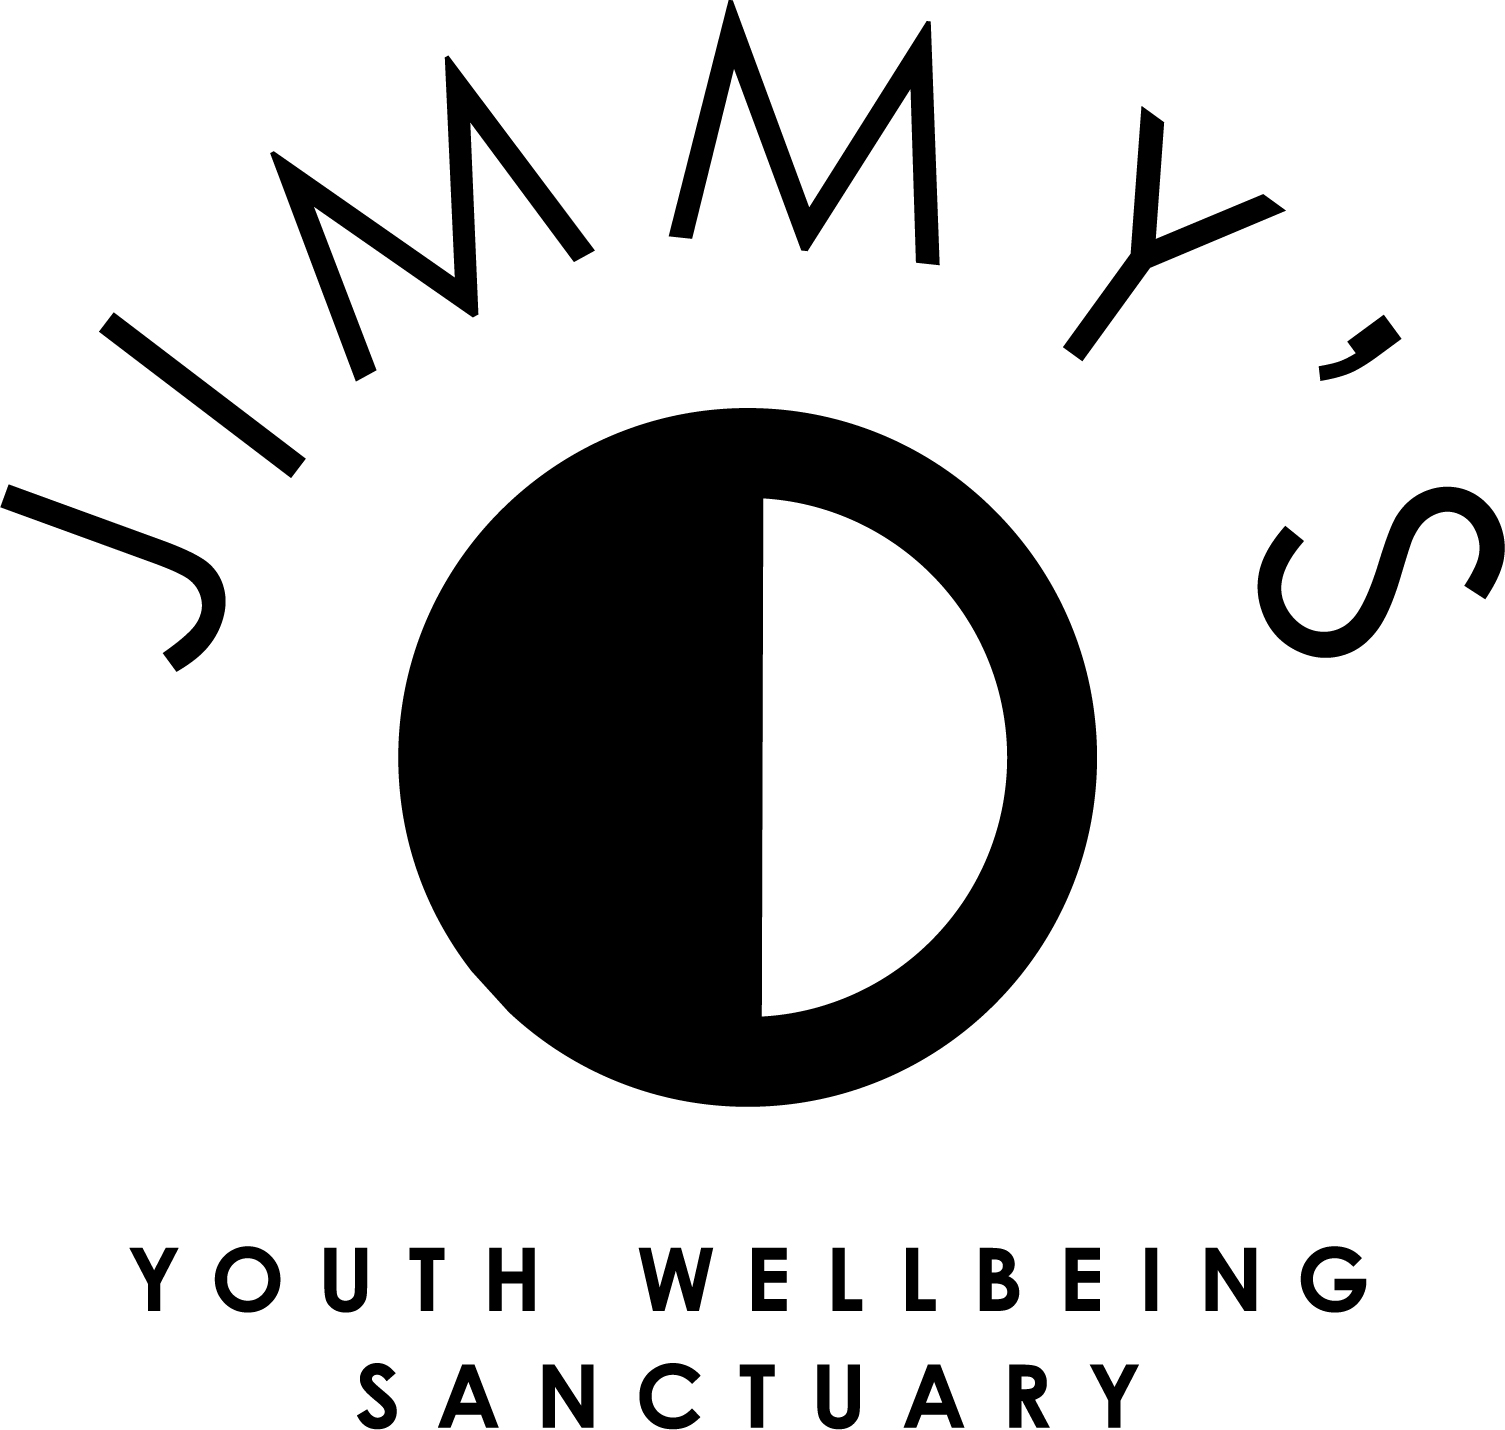 Jimmy's Foundation